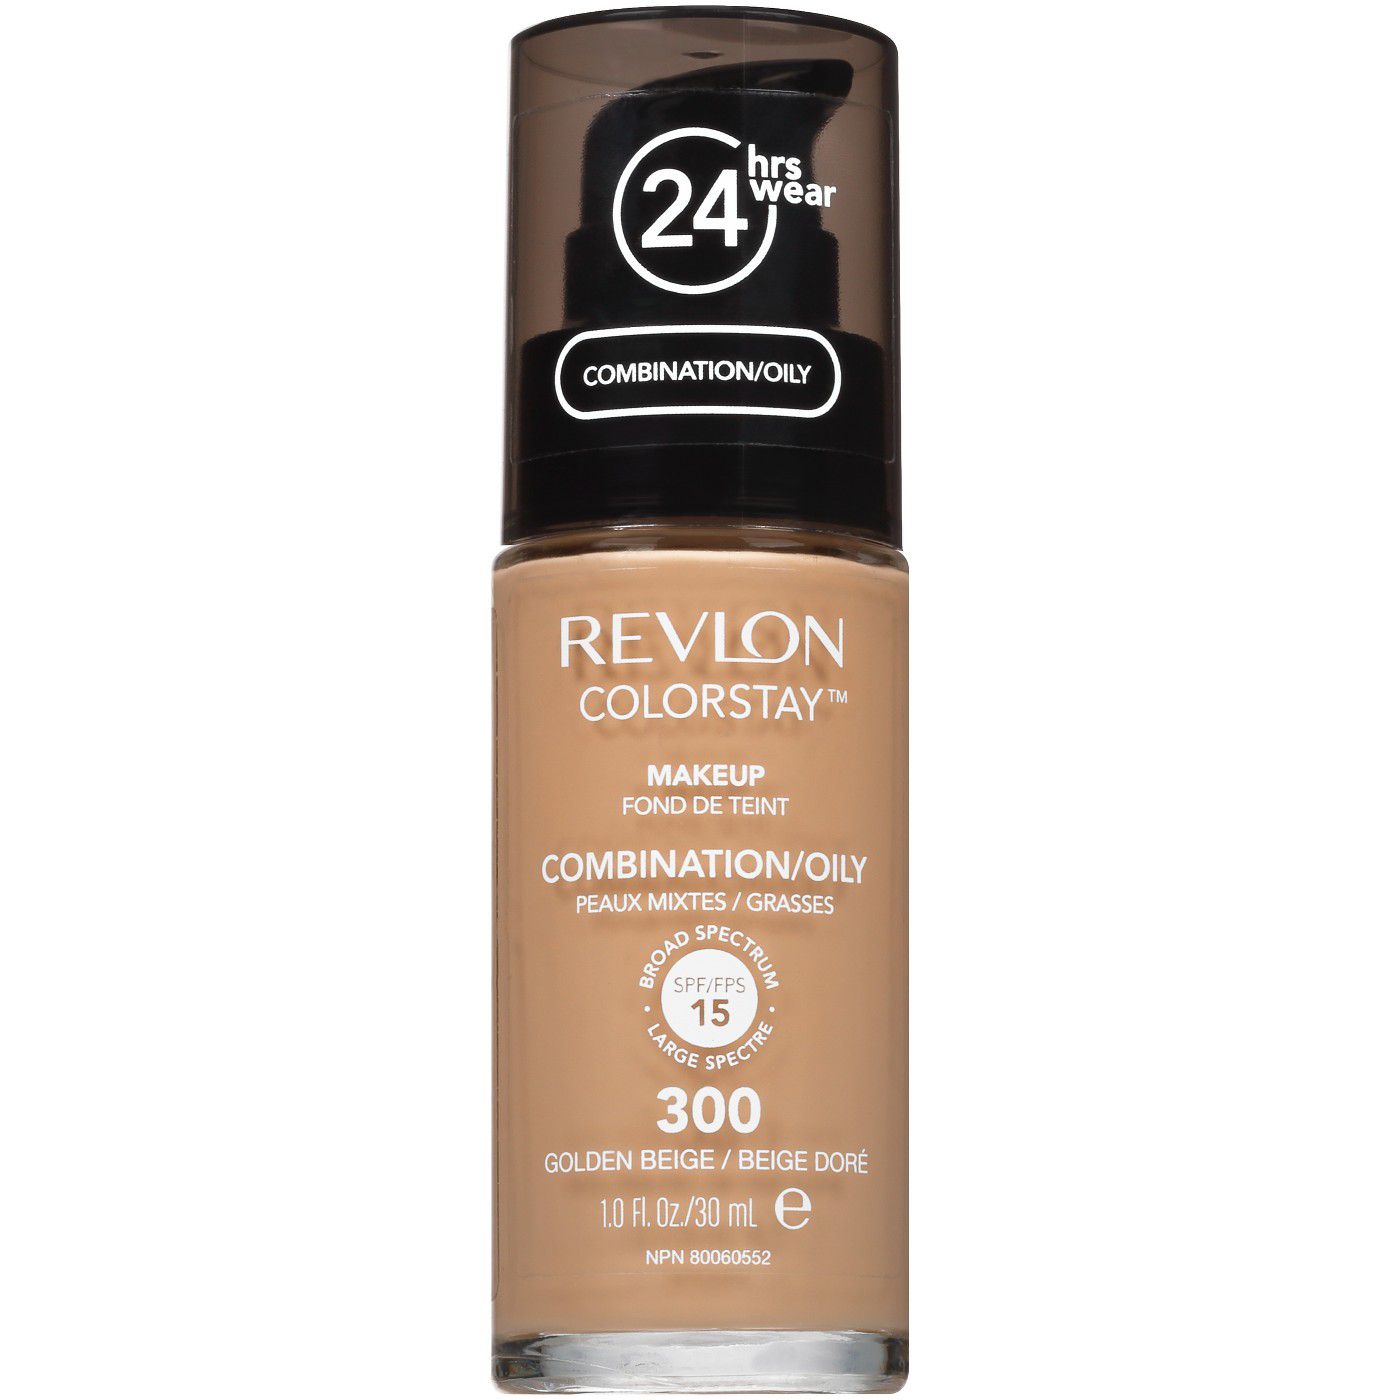 Revlon Colorstay Makeup Foundating para combinação/pele oleosa com SPF15